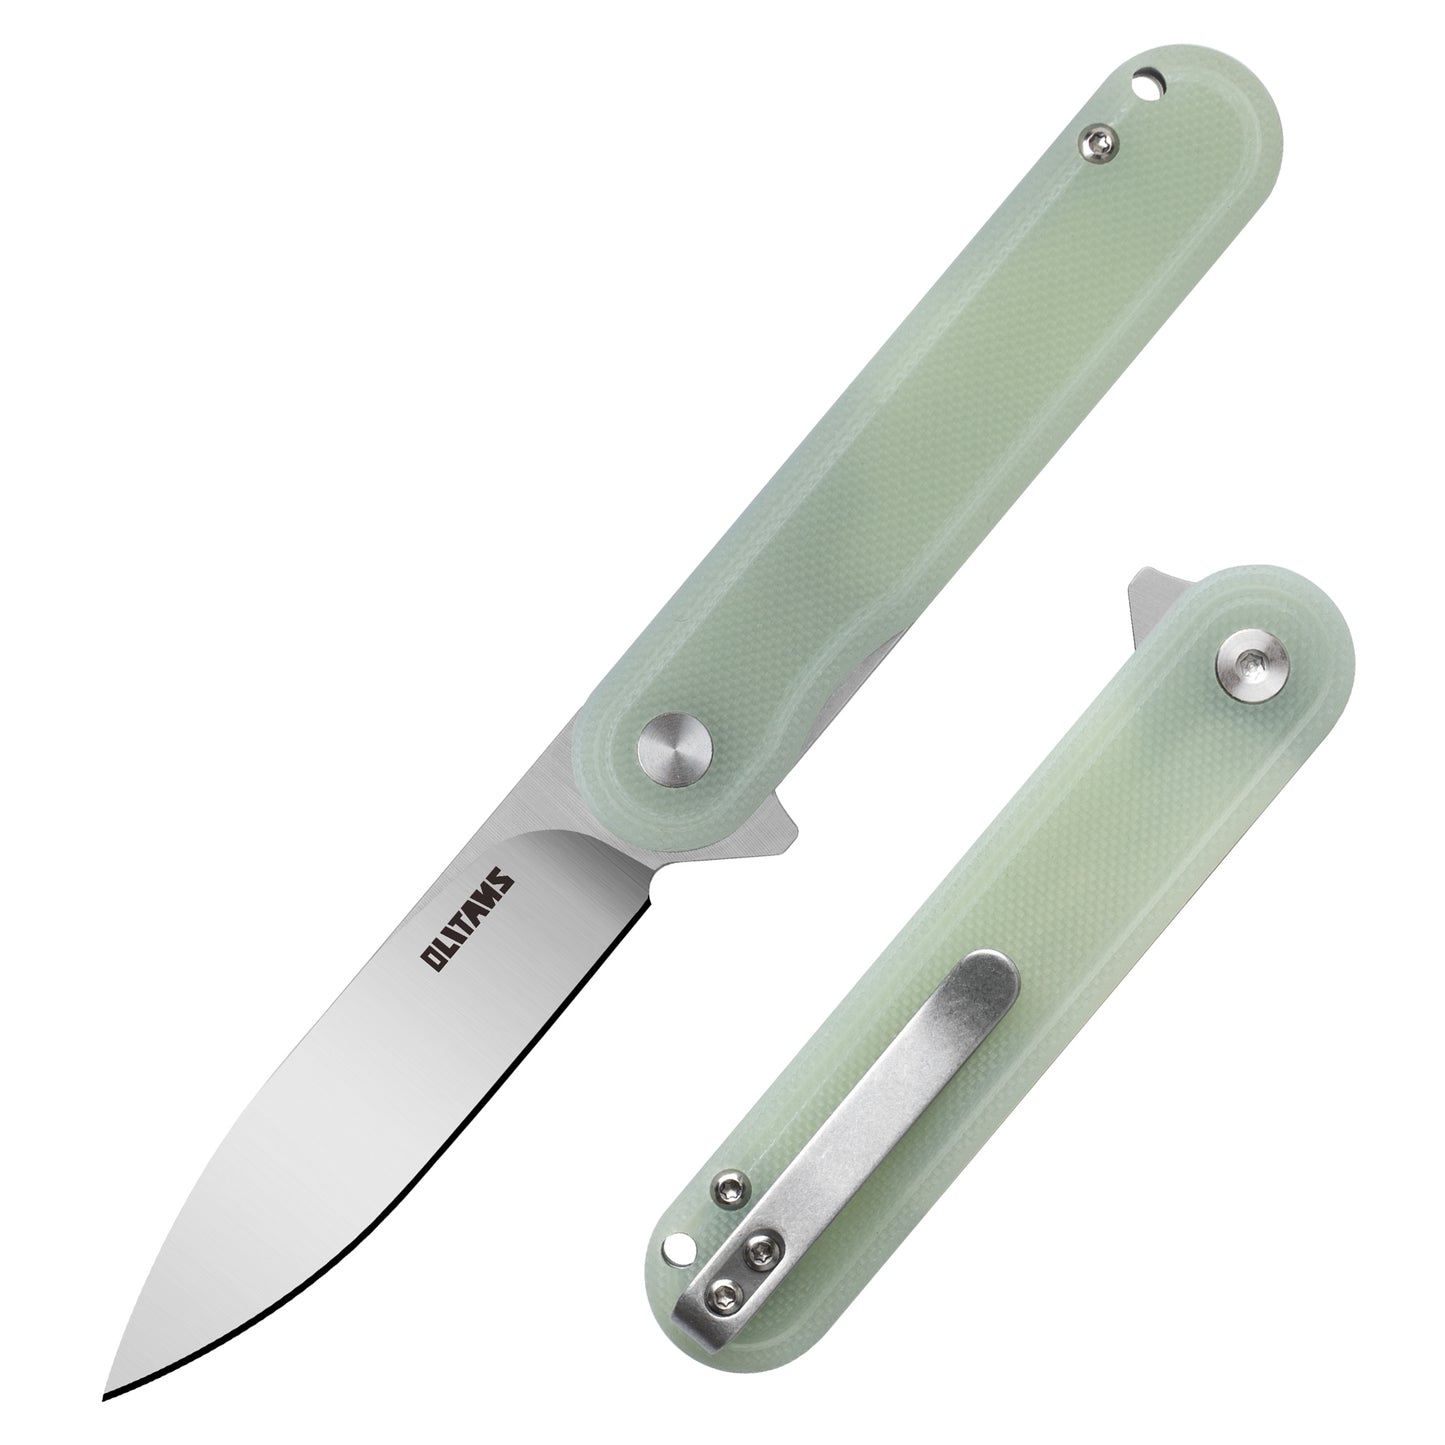 Карманный нож OLITANS G040, стальное лезвие D2, ручка G10, 2,75 дюйма, маленький нож EDC с карманным зажимом для мужчин и женщин, мини-складной походный нож, 2,1 унции